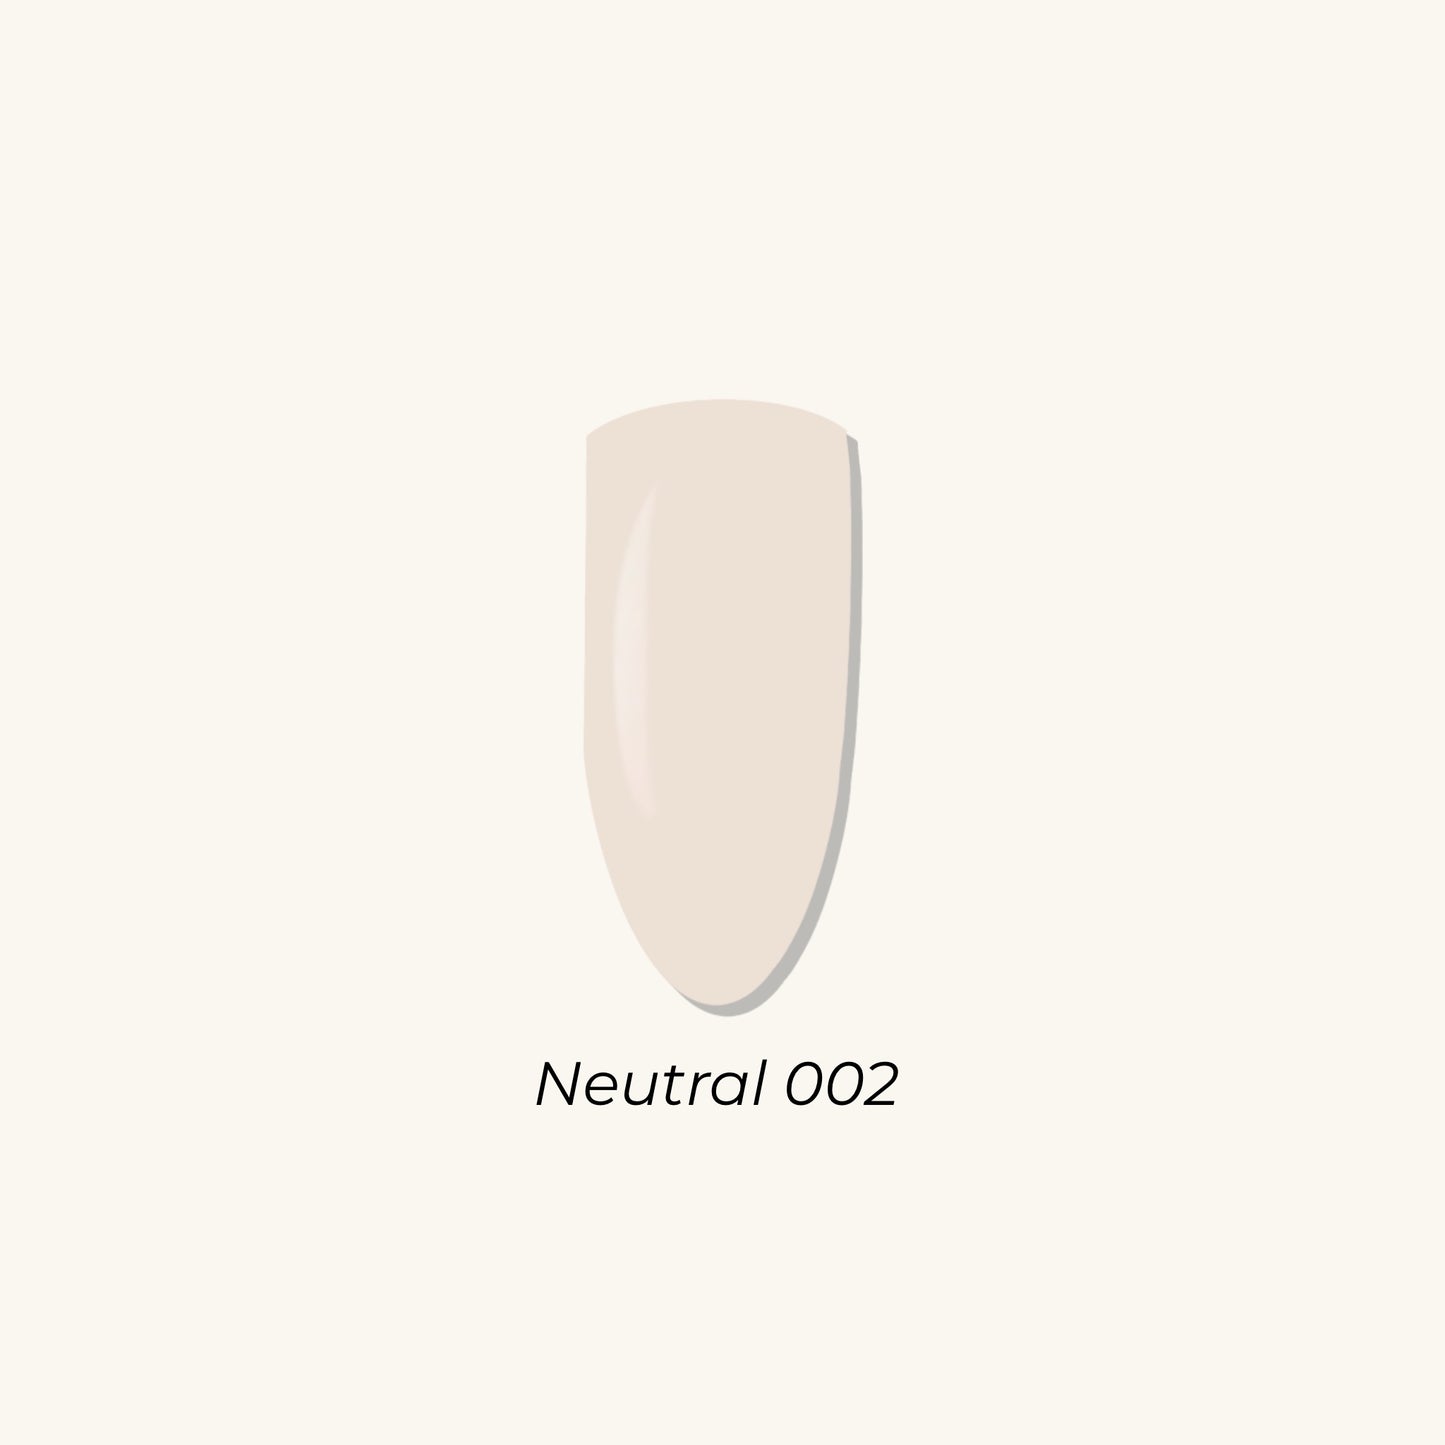 Neutral 002